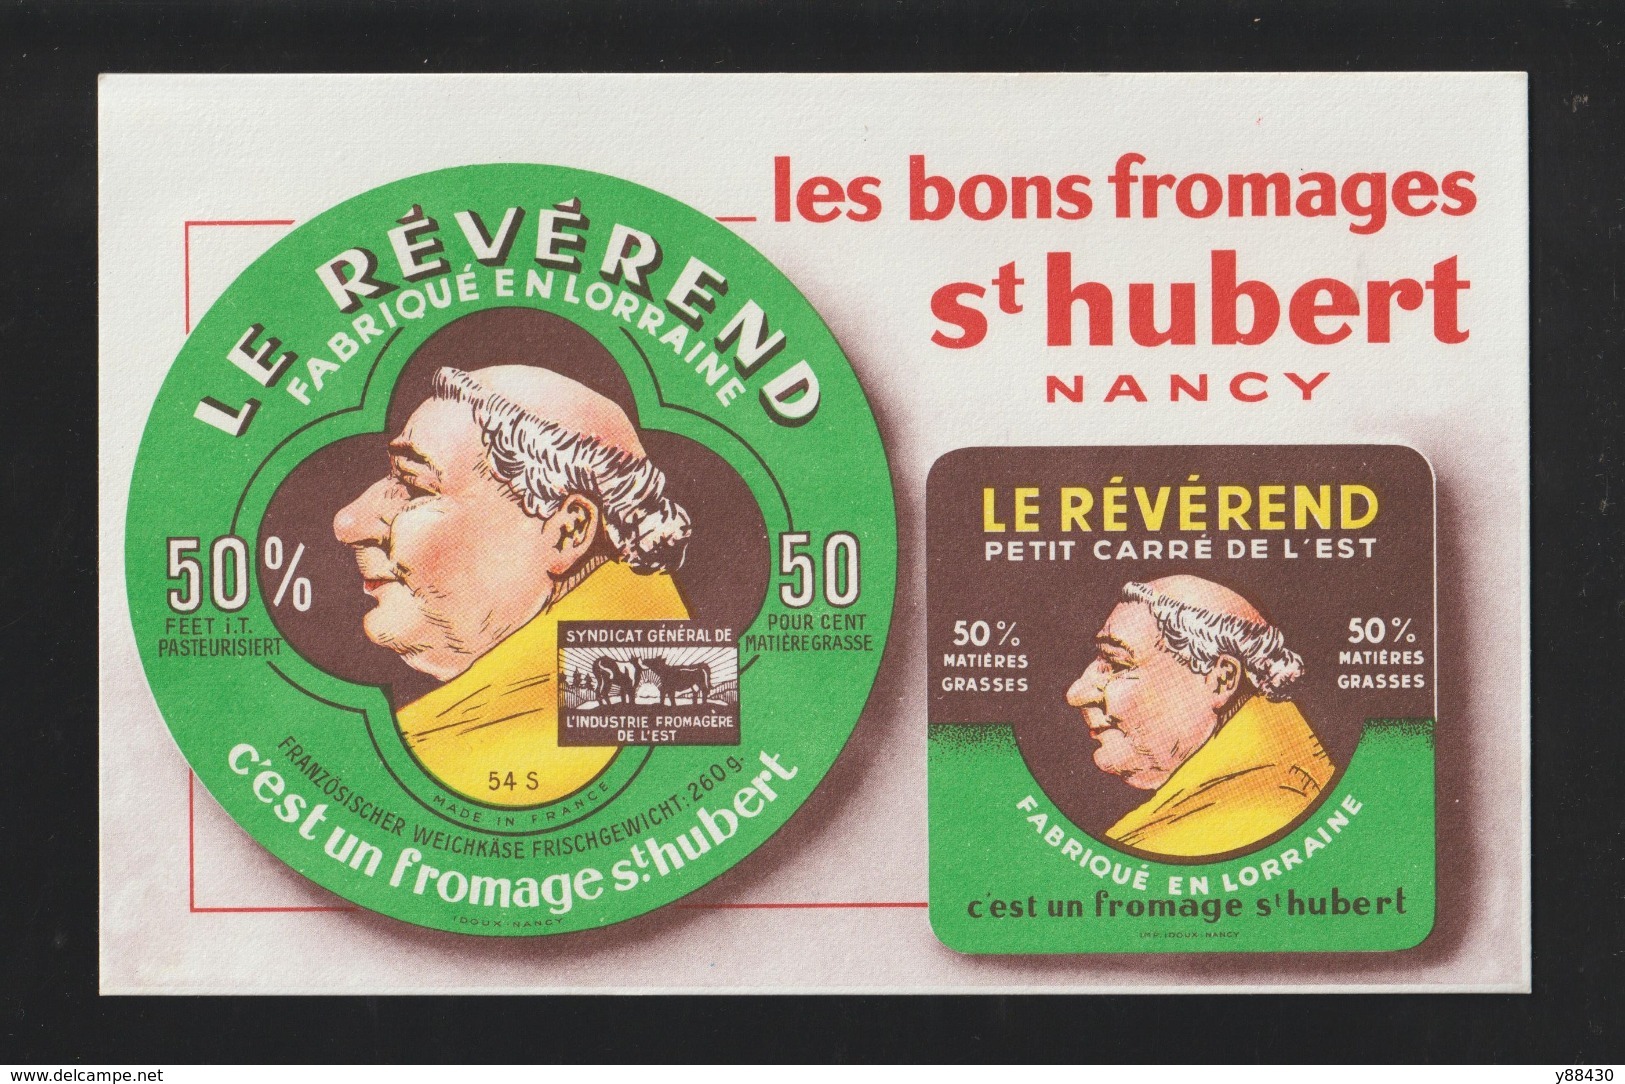 BUVARD - ST. HUBERT LE REVEREND - NANCY . Les Bons Fromages Fabriqué En Lorraine - 2 Scannes. - Produits Laitiers